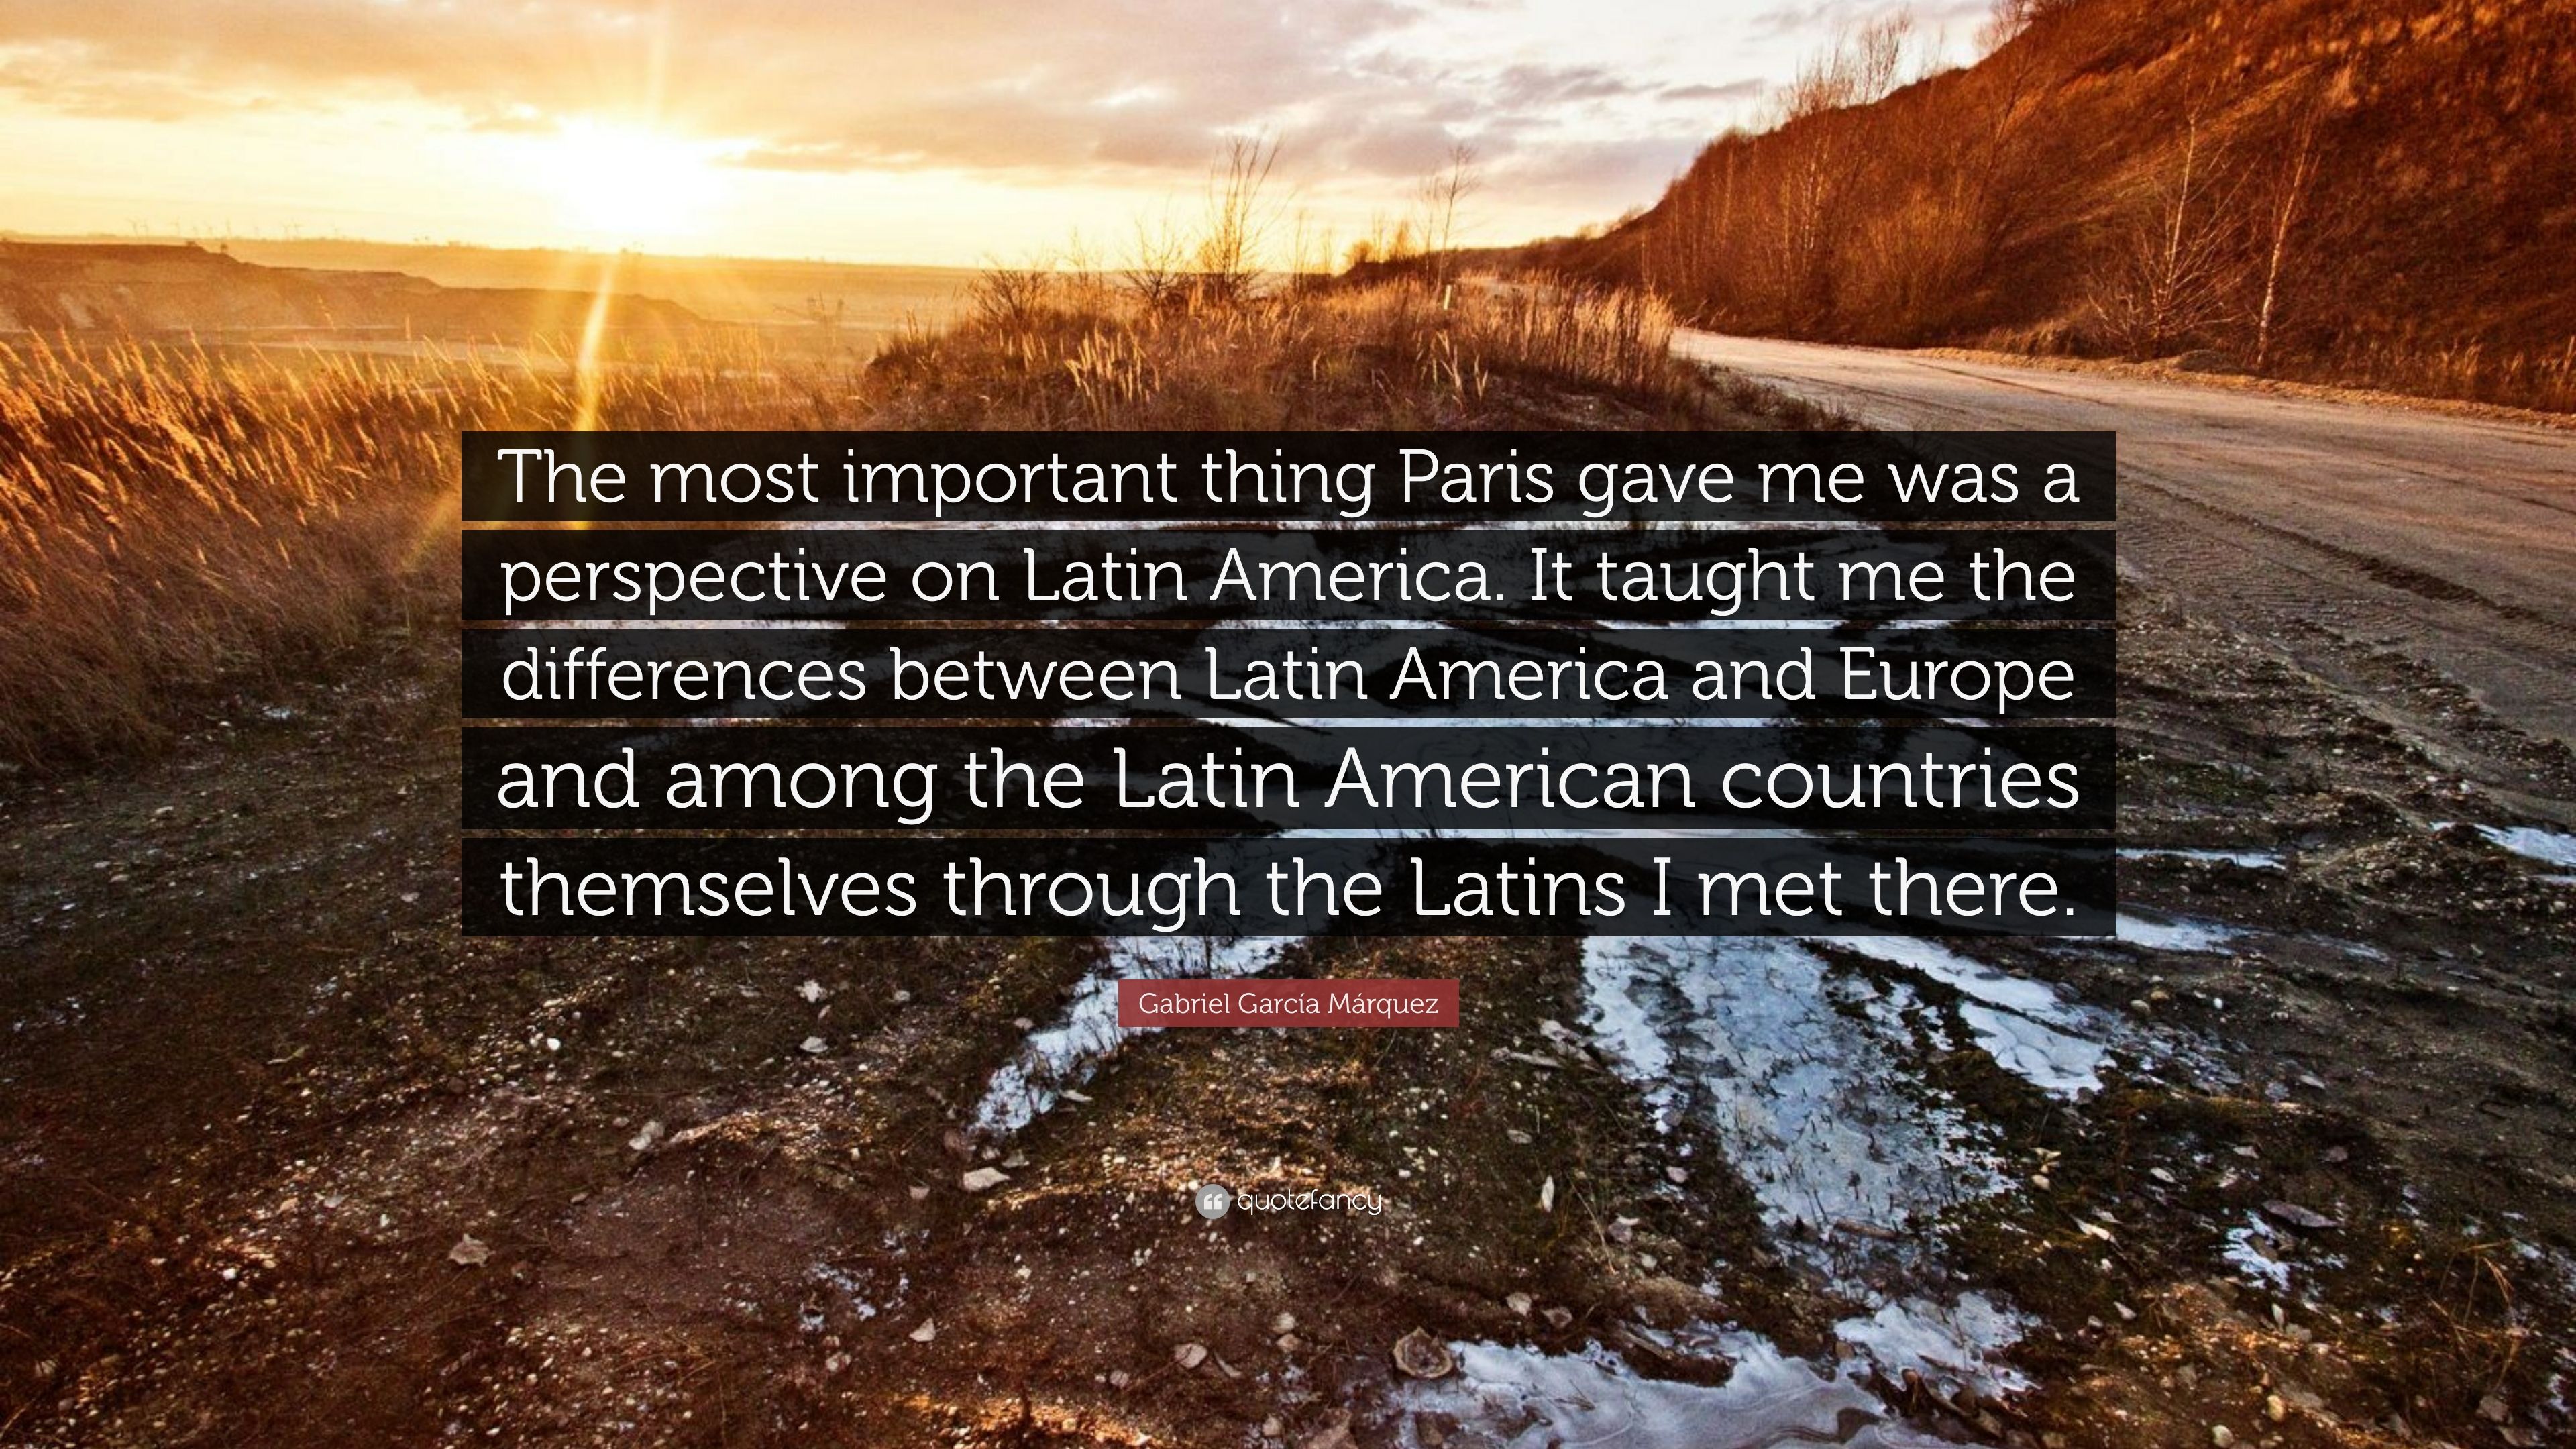 Gabriel García Márquez Quote: “The most important thing Paris gave